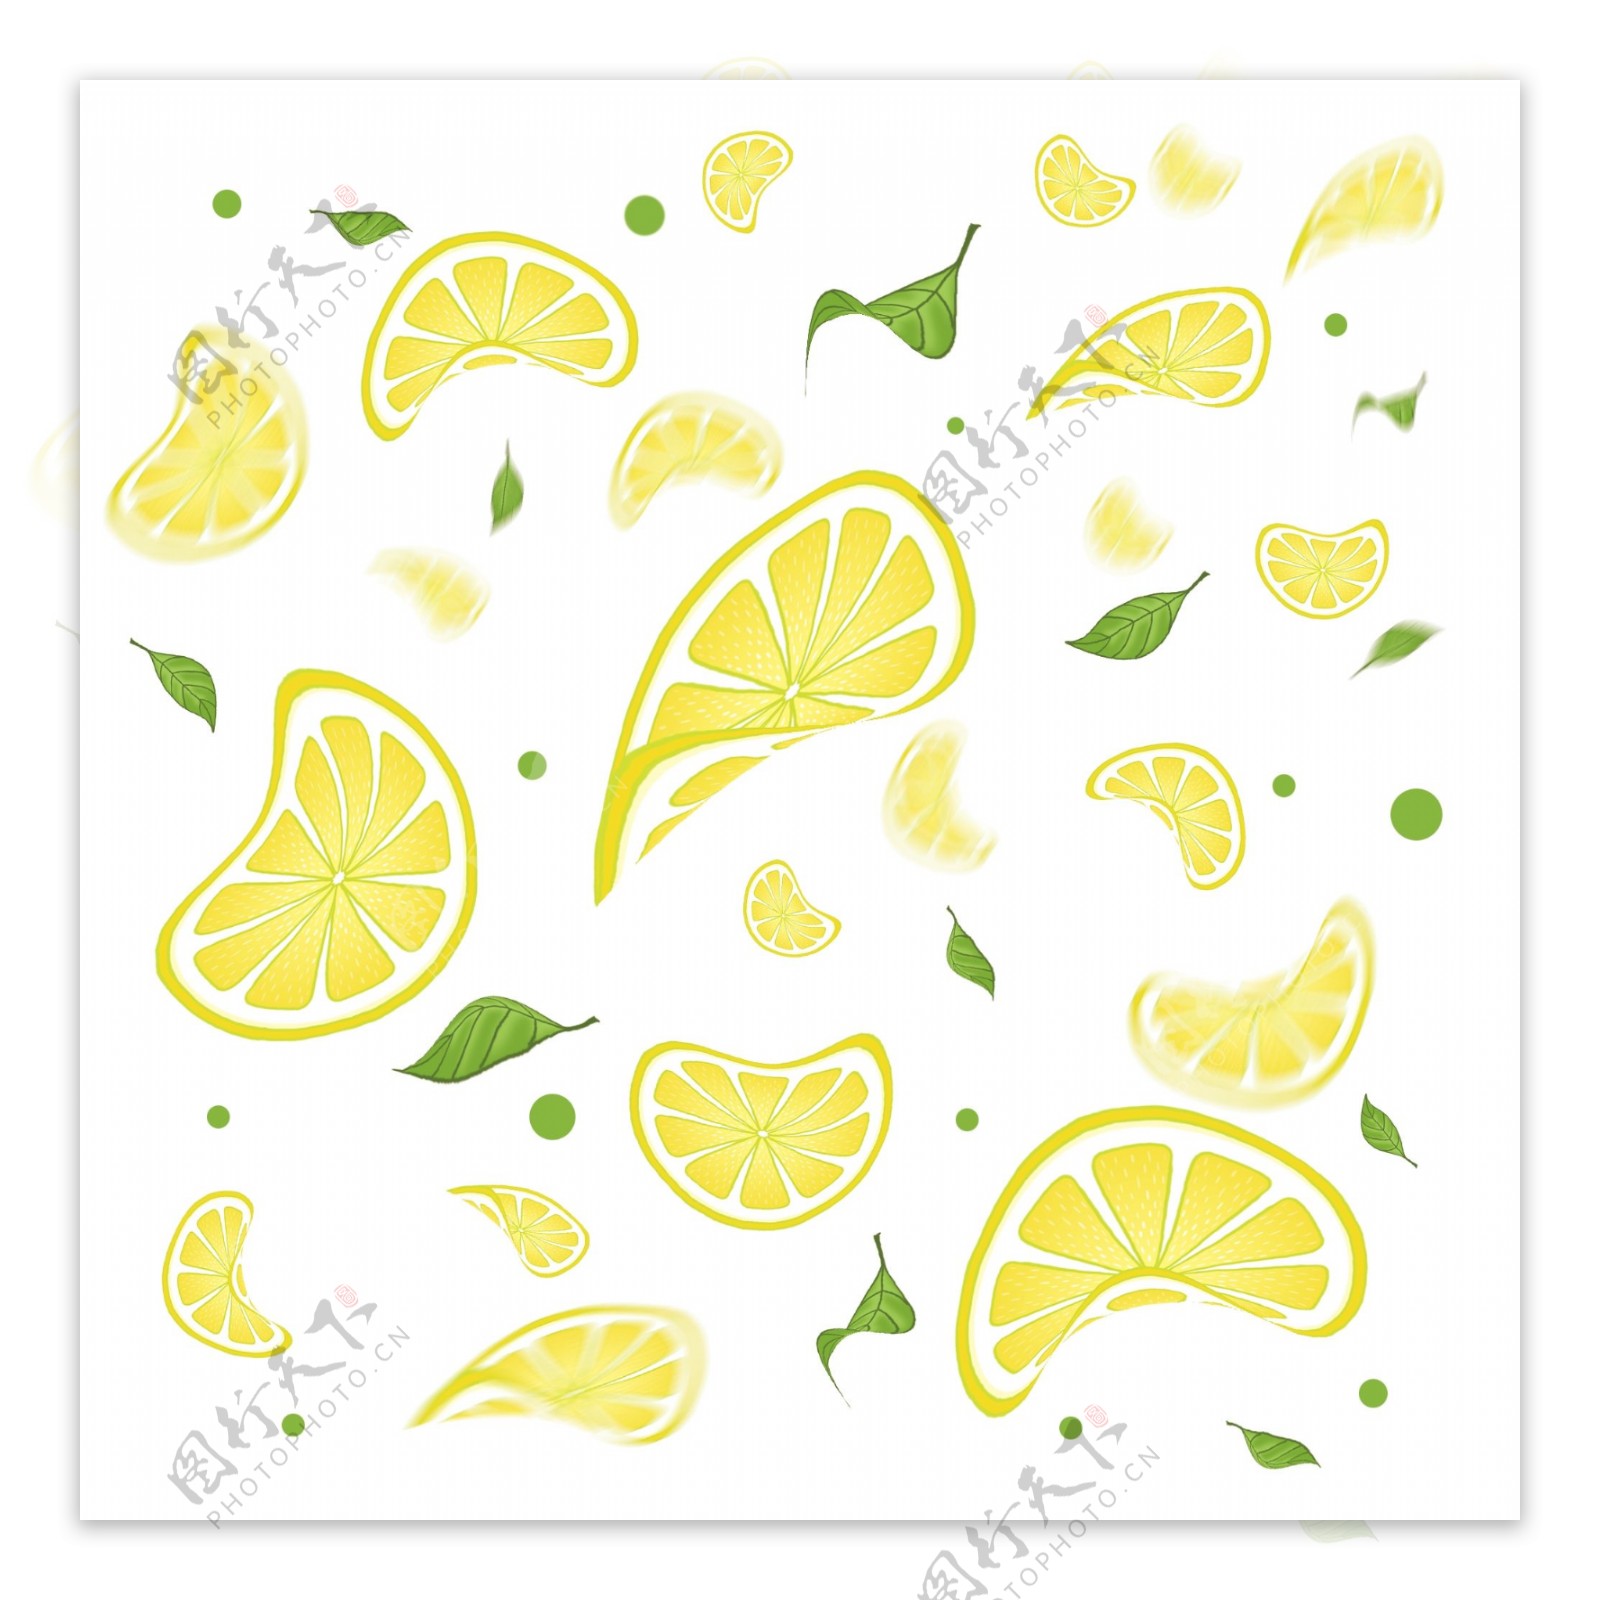 散落的黄色柠檬片和叶子